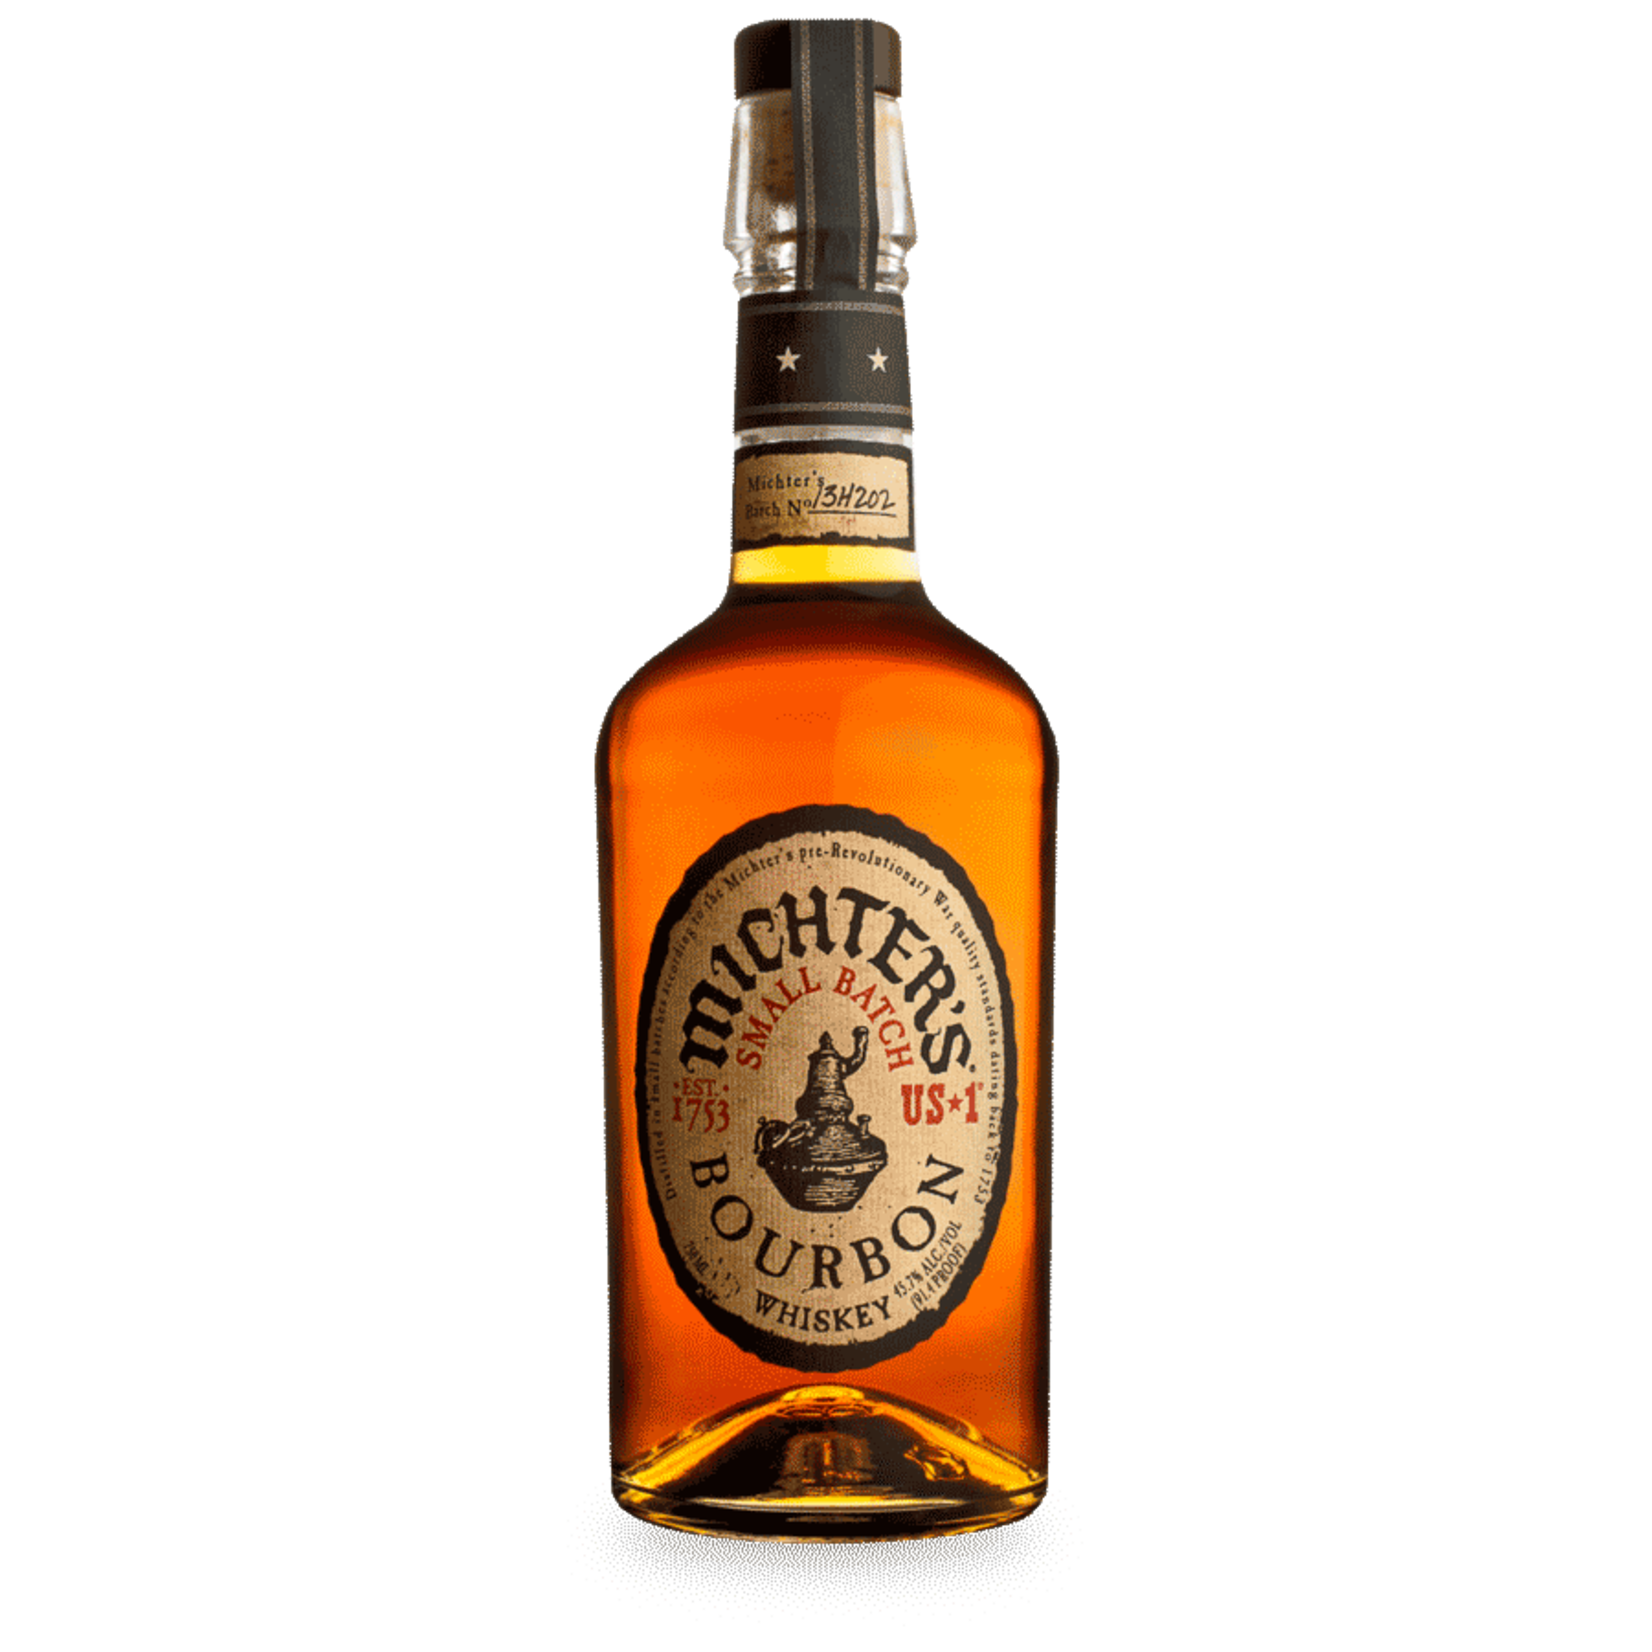 Spirits Michter's US-1 Small Batch Bourbon